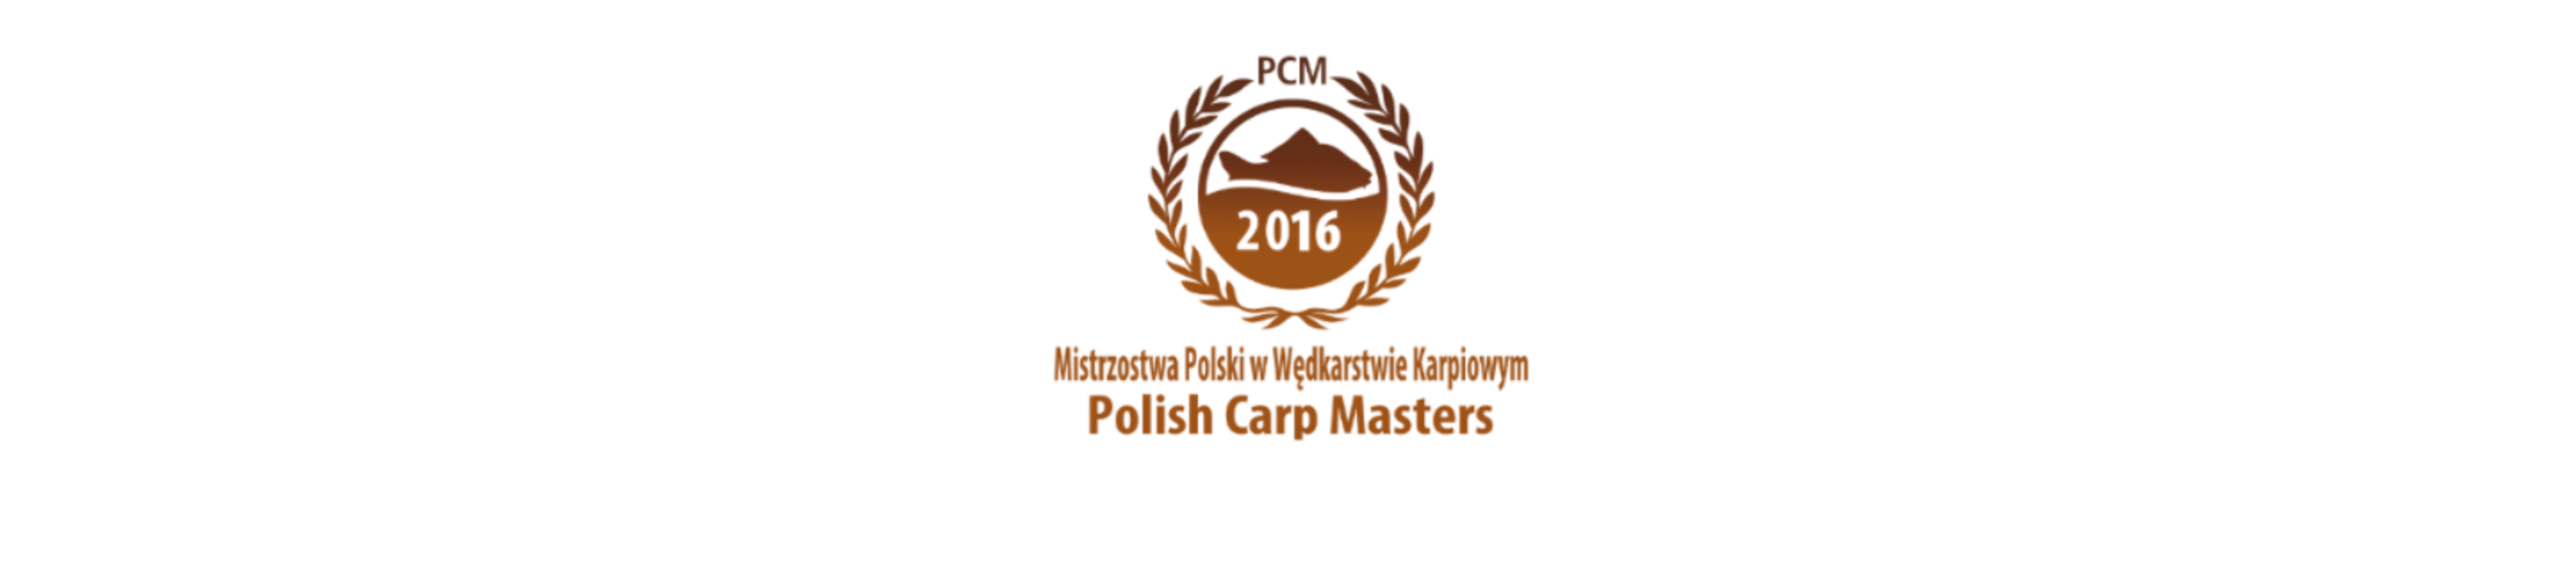 PCM 2016